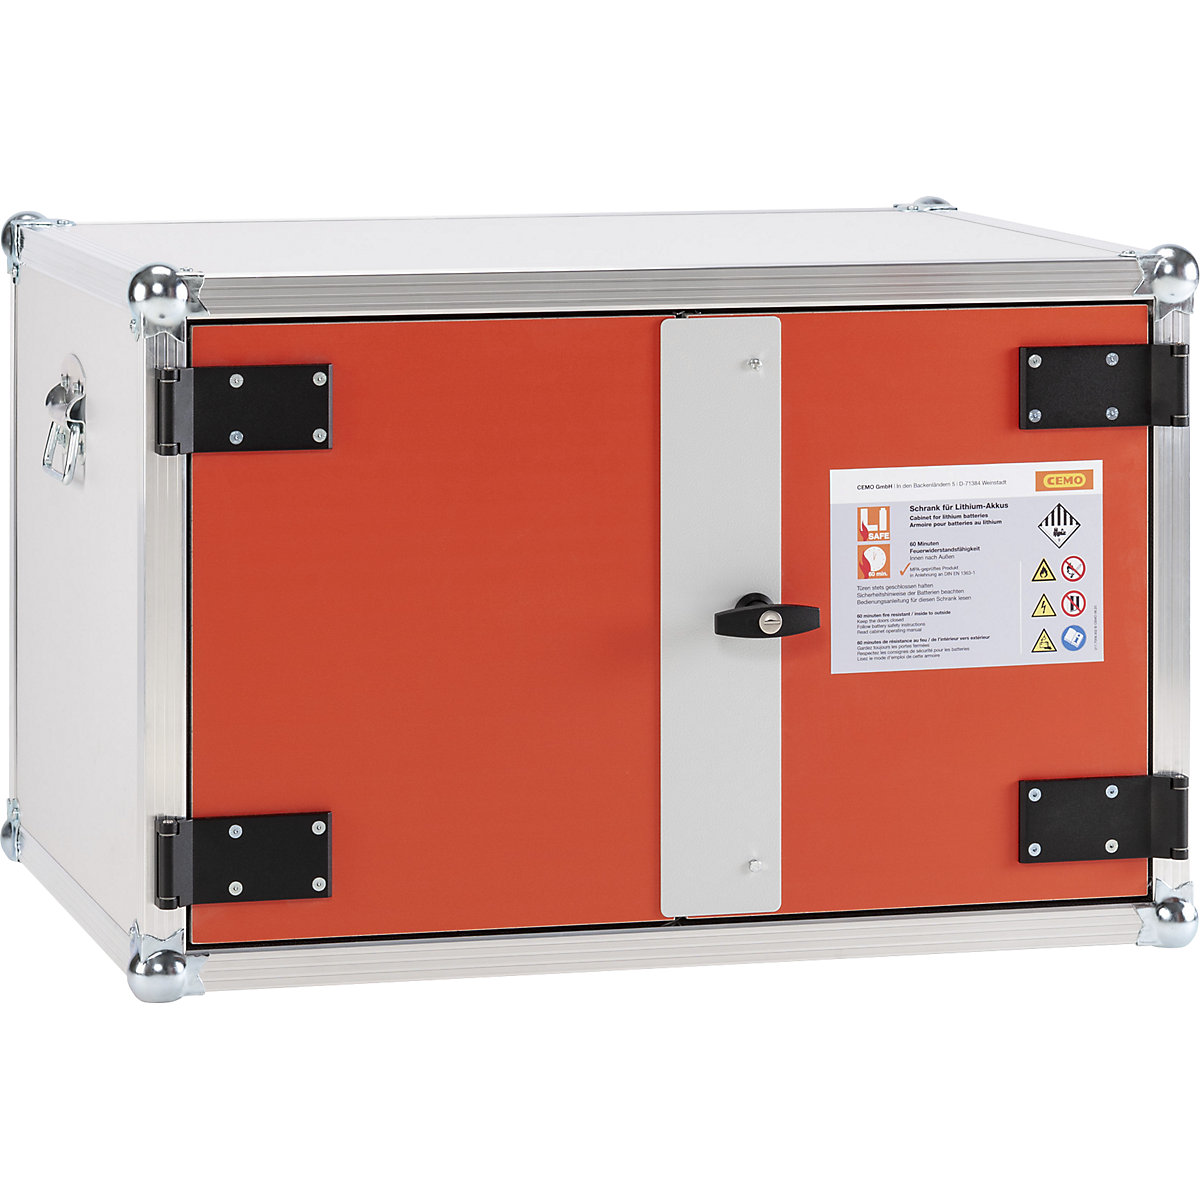 FWF 60 biztonsági akkumulátortároló szekrény - CEMO